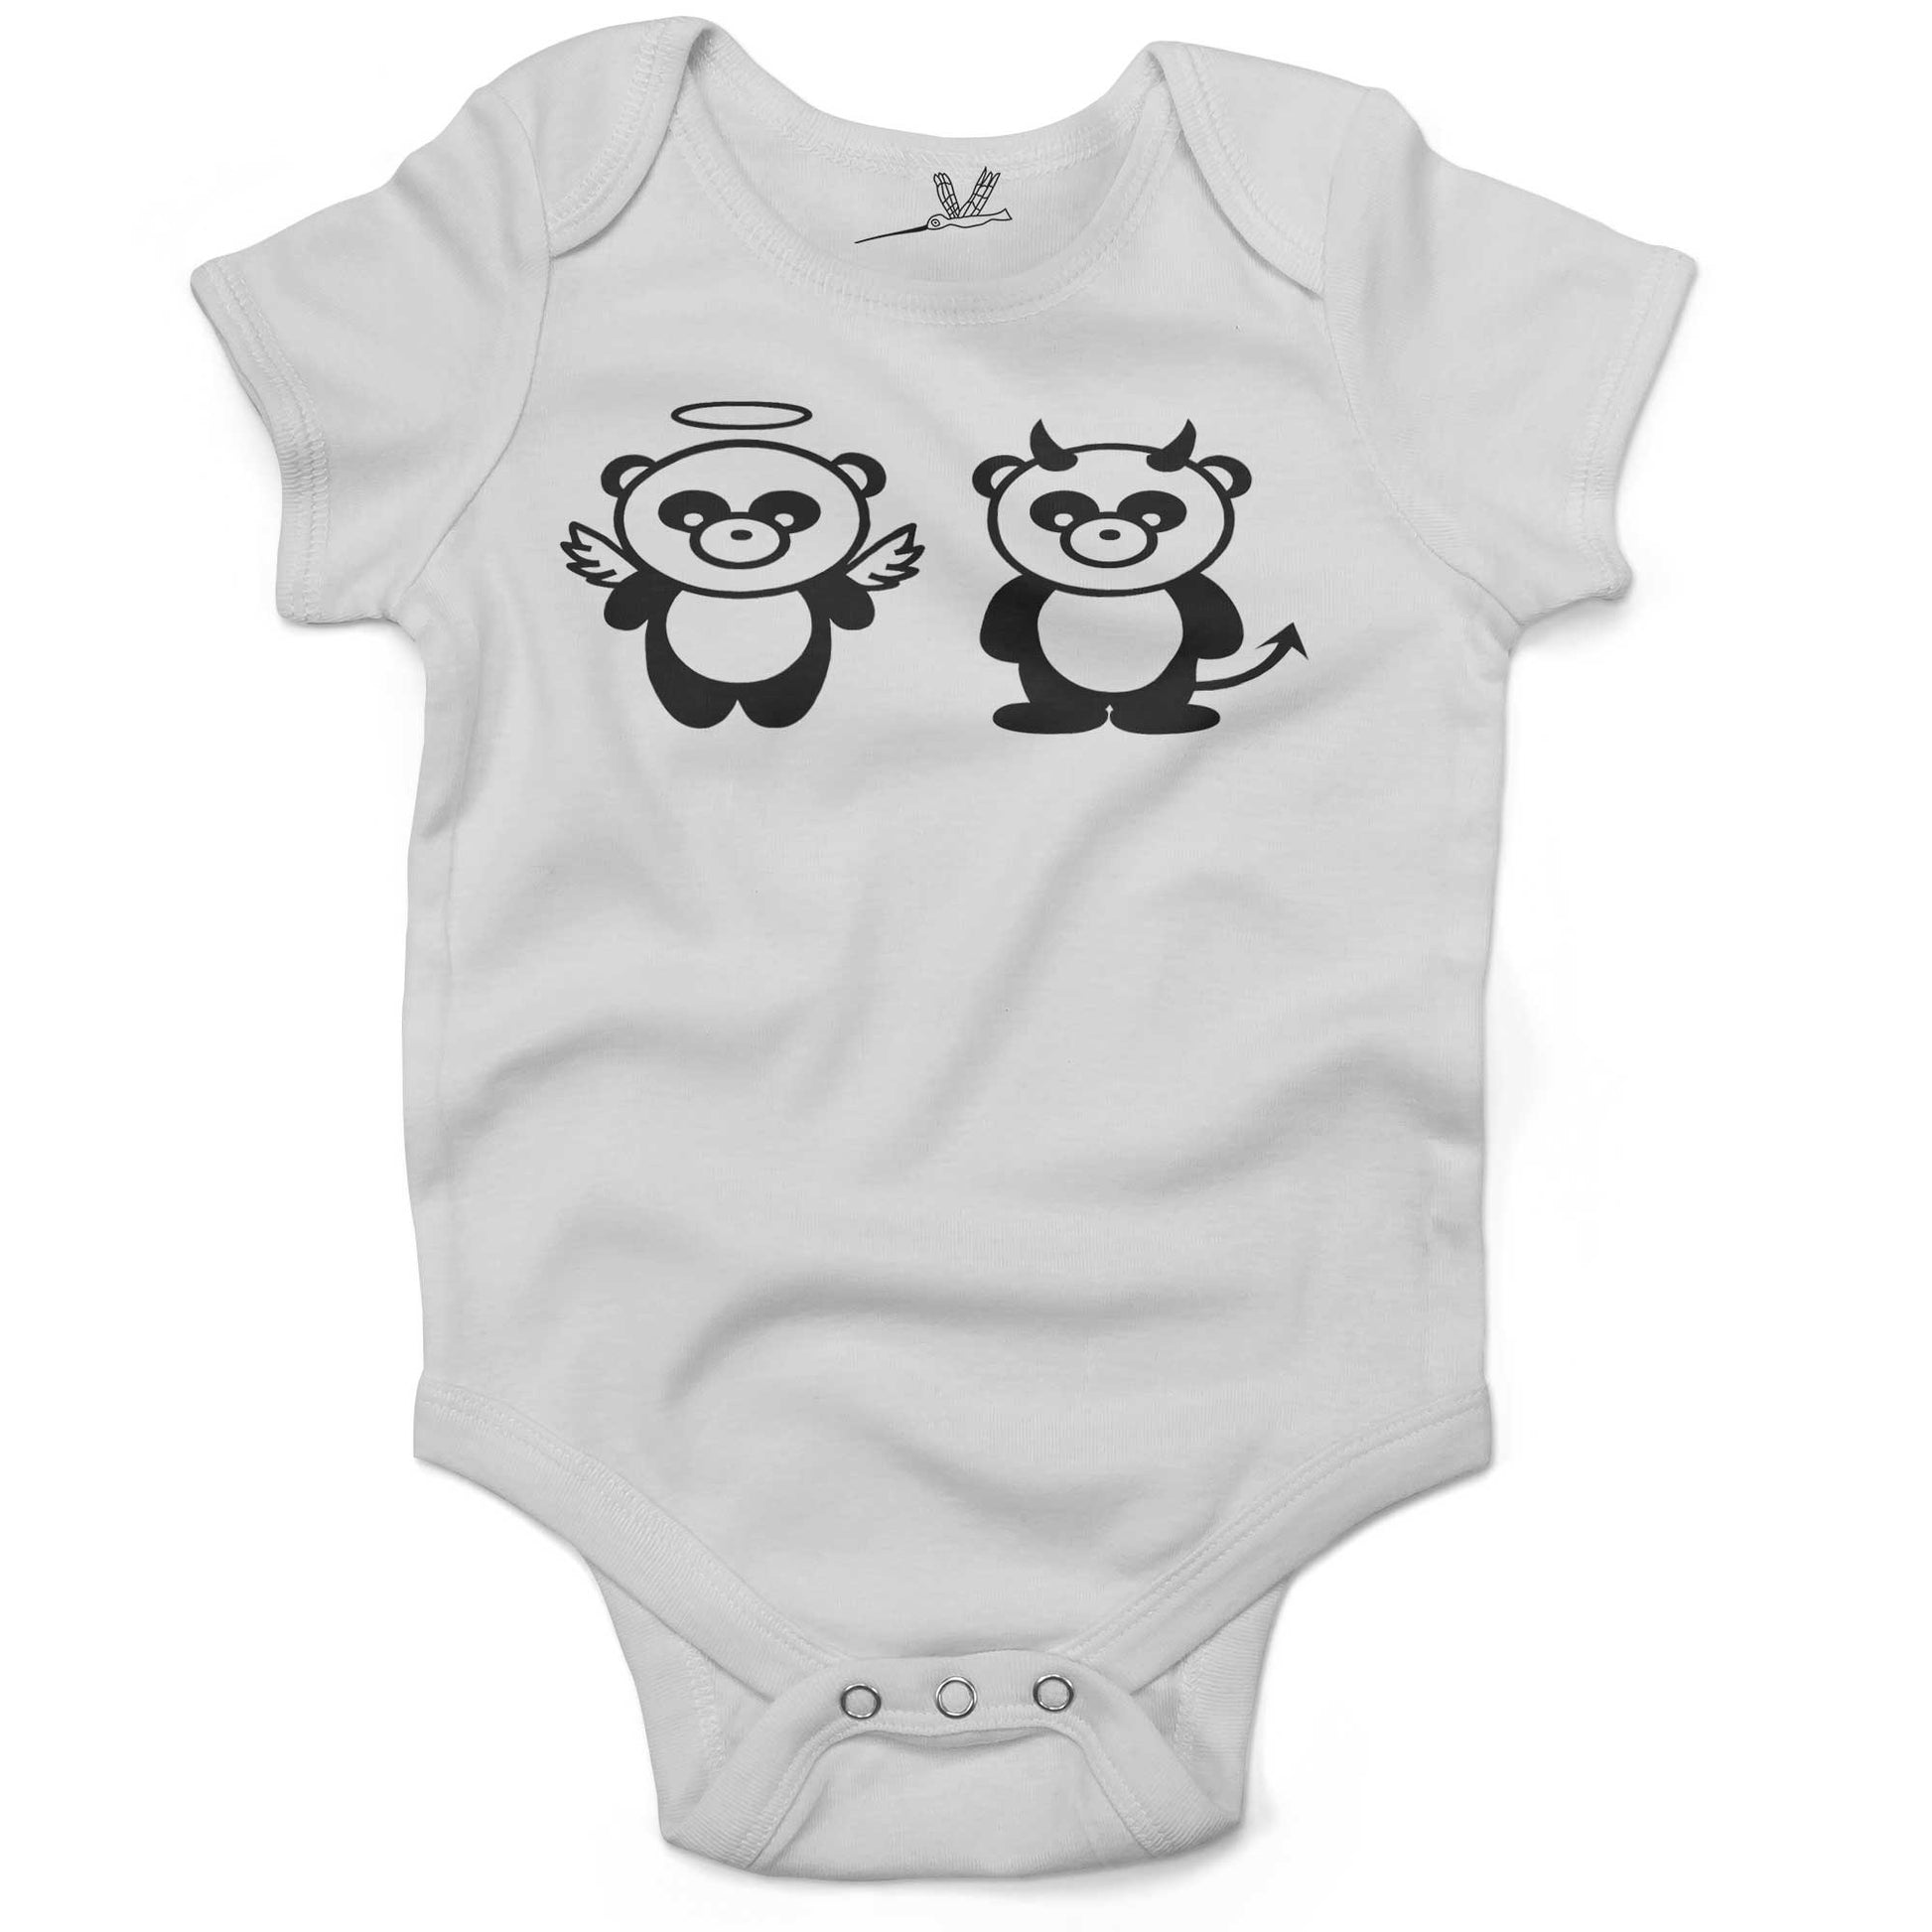 Good Panda, Bad Panda Infant Bodysuit or Raglan Tee-White-3-6 months